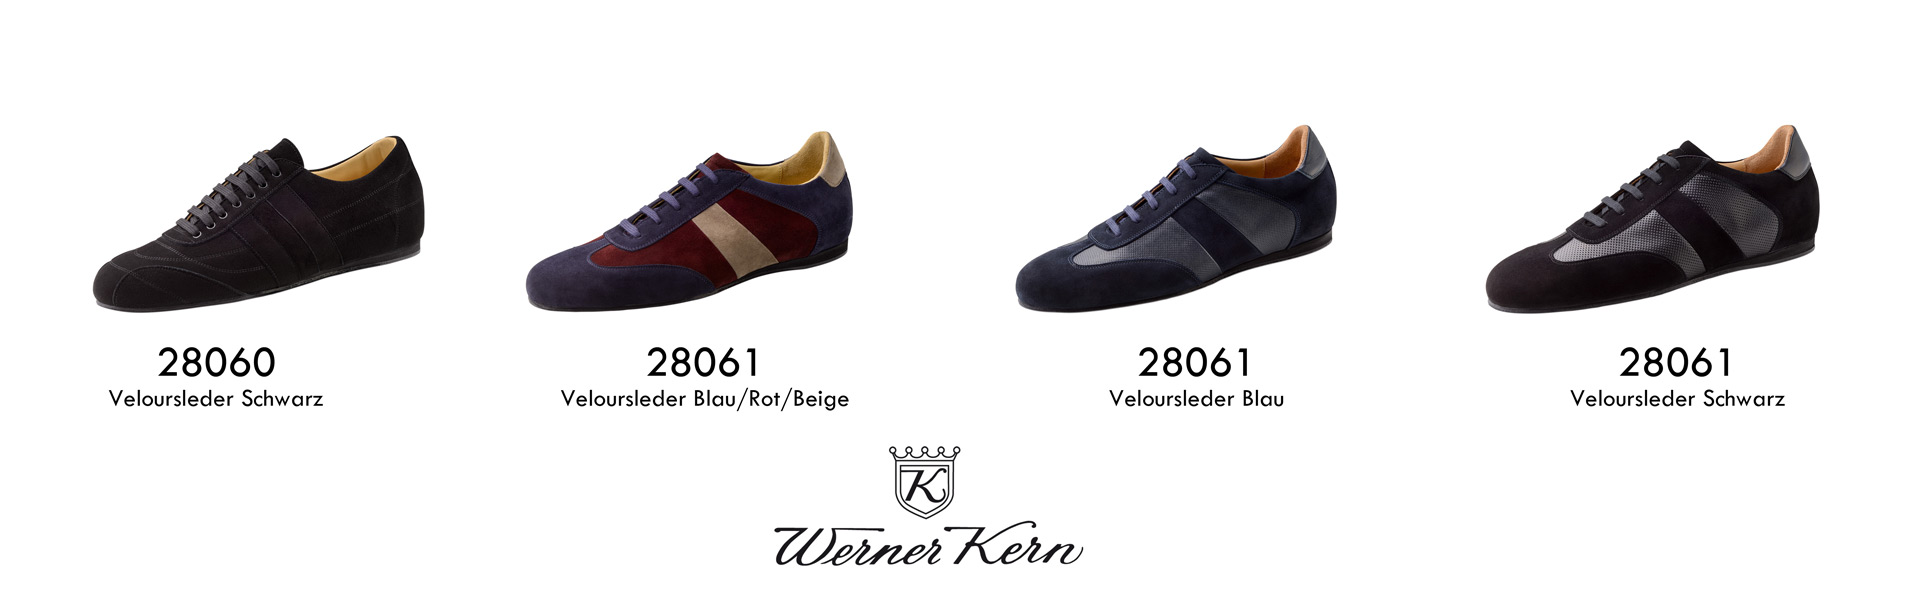 Werner Kern Zapatos de Baile 28060 28061